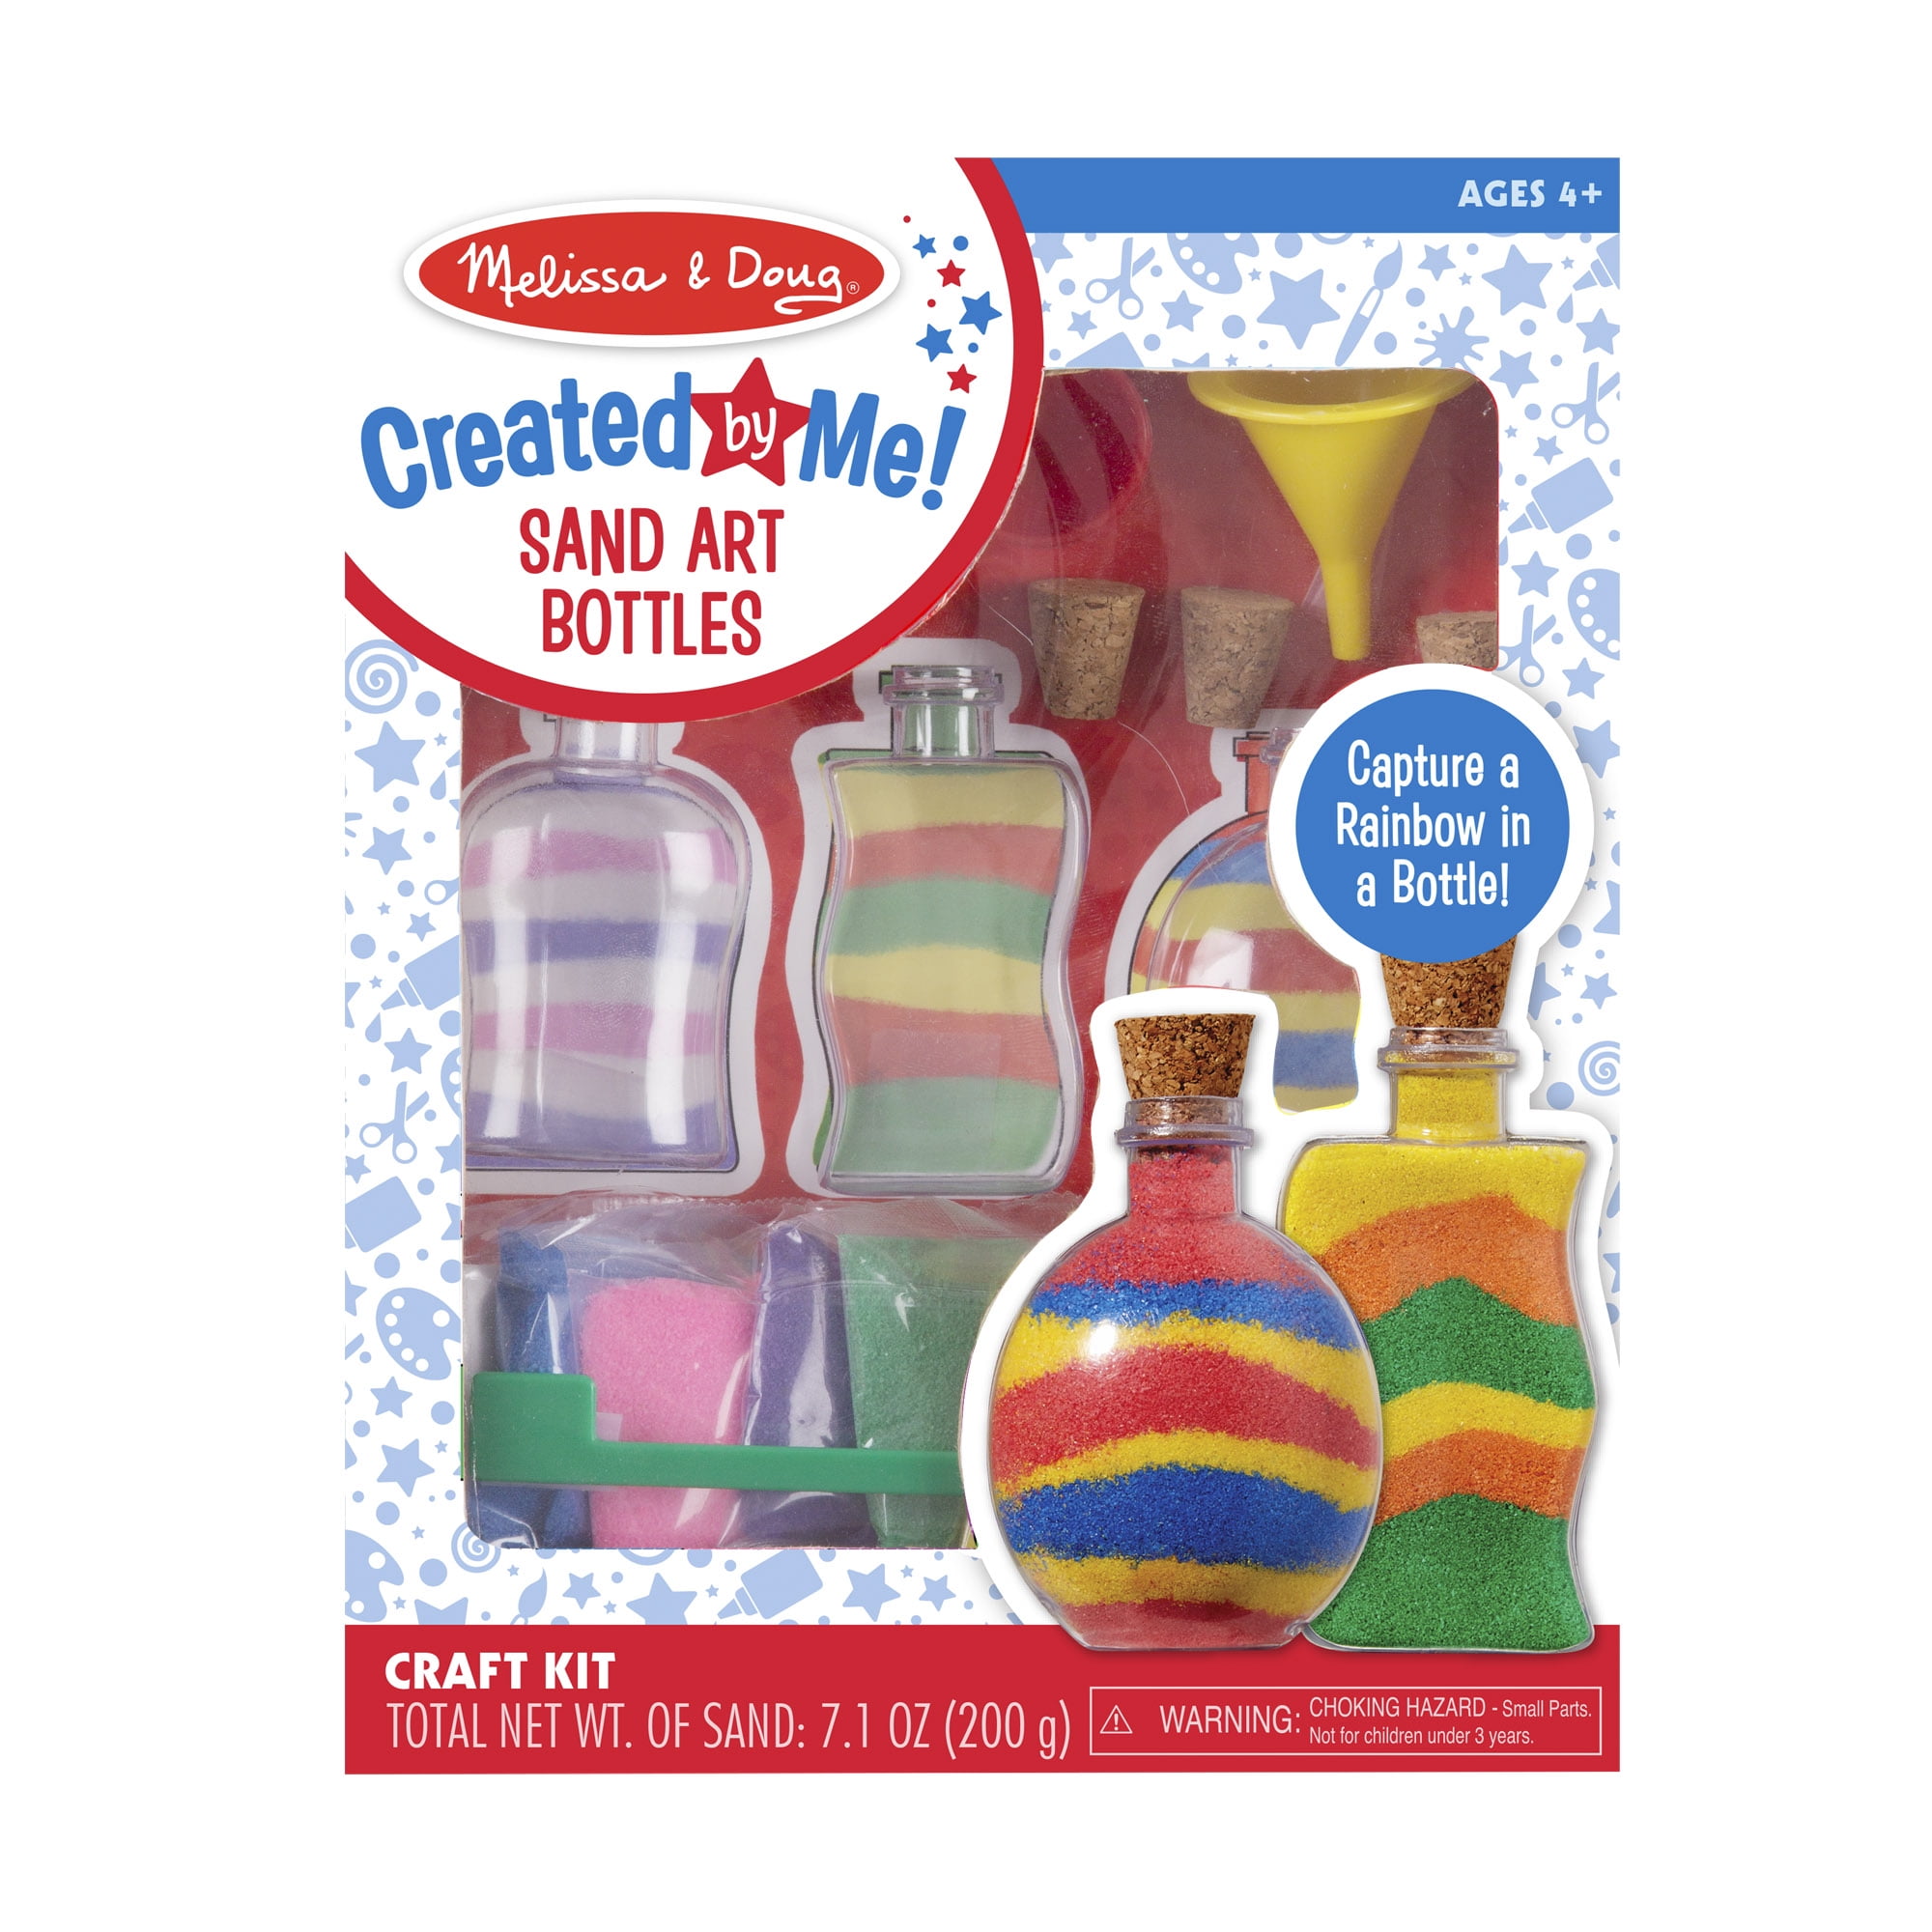 Decorate Your Own Glitter Bottles or Bottle Sand Art 